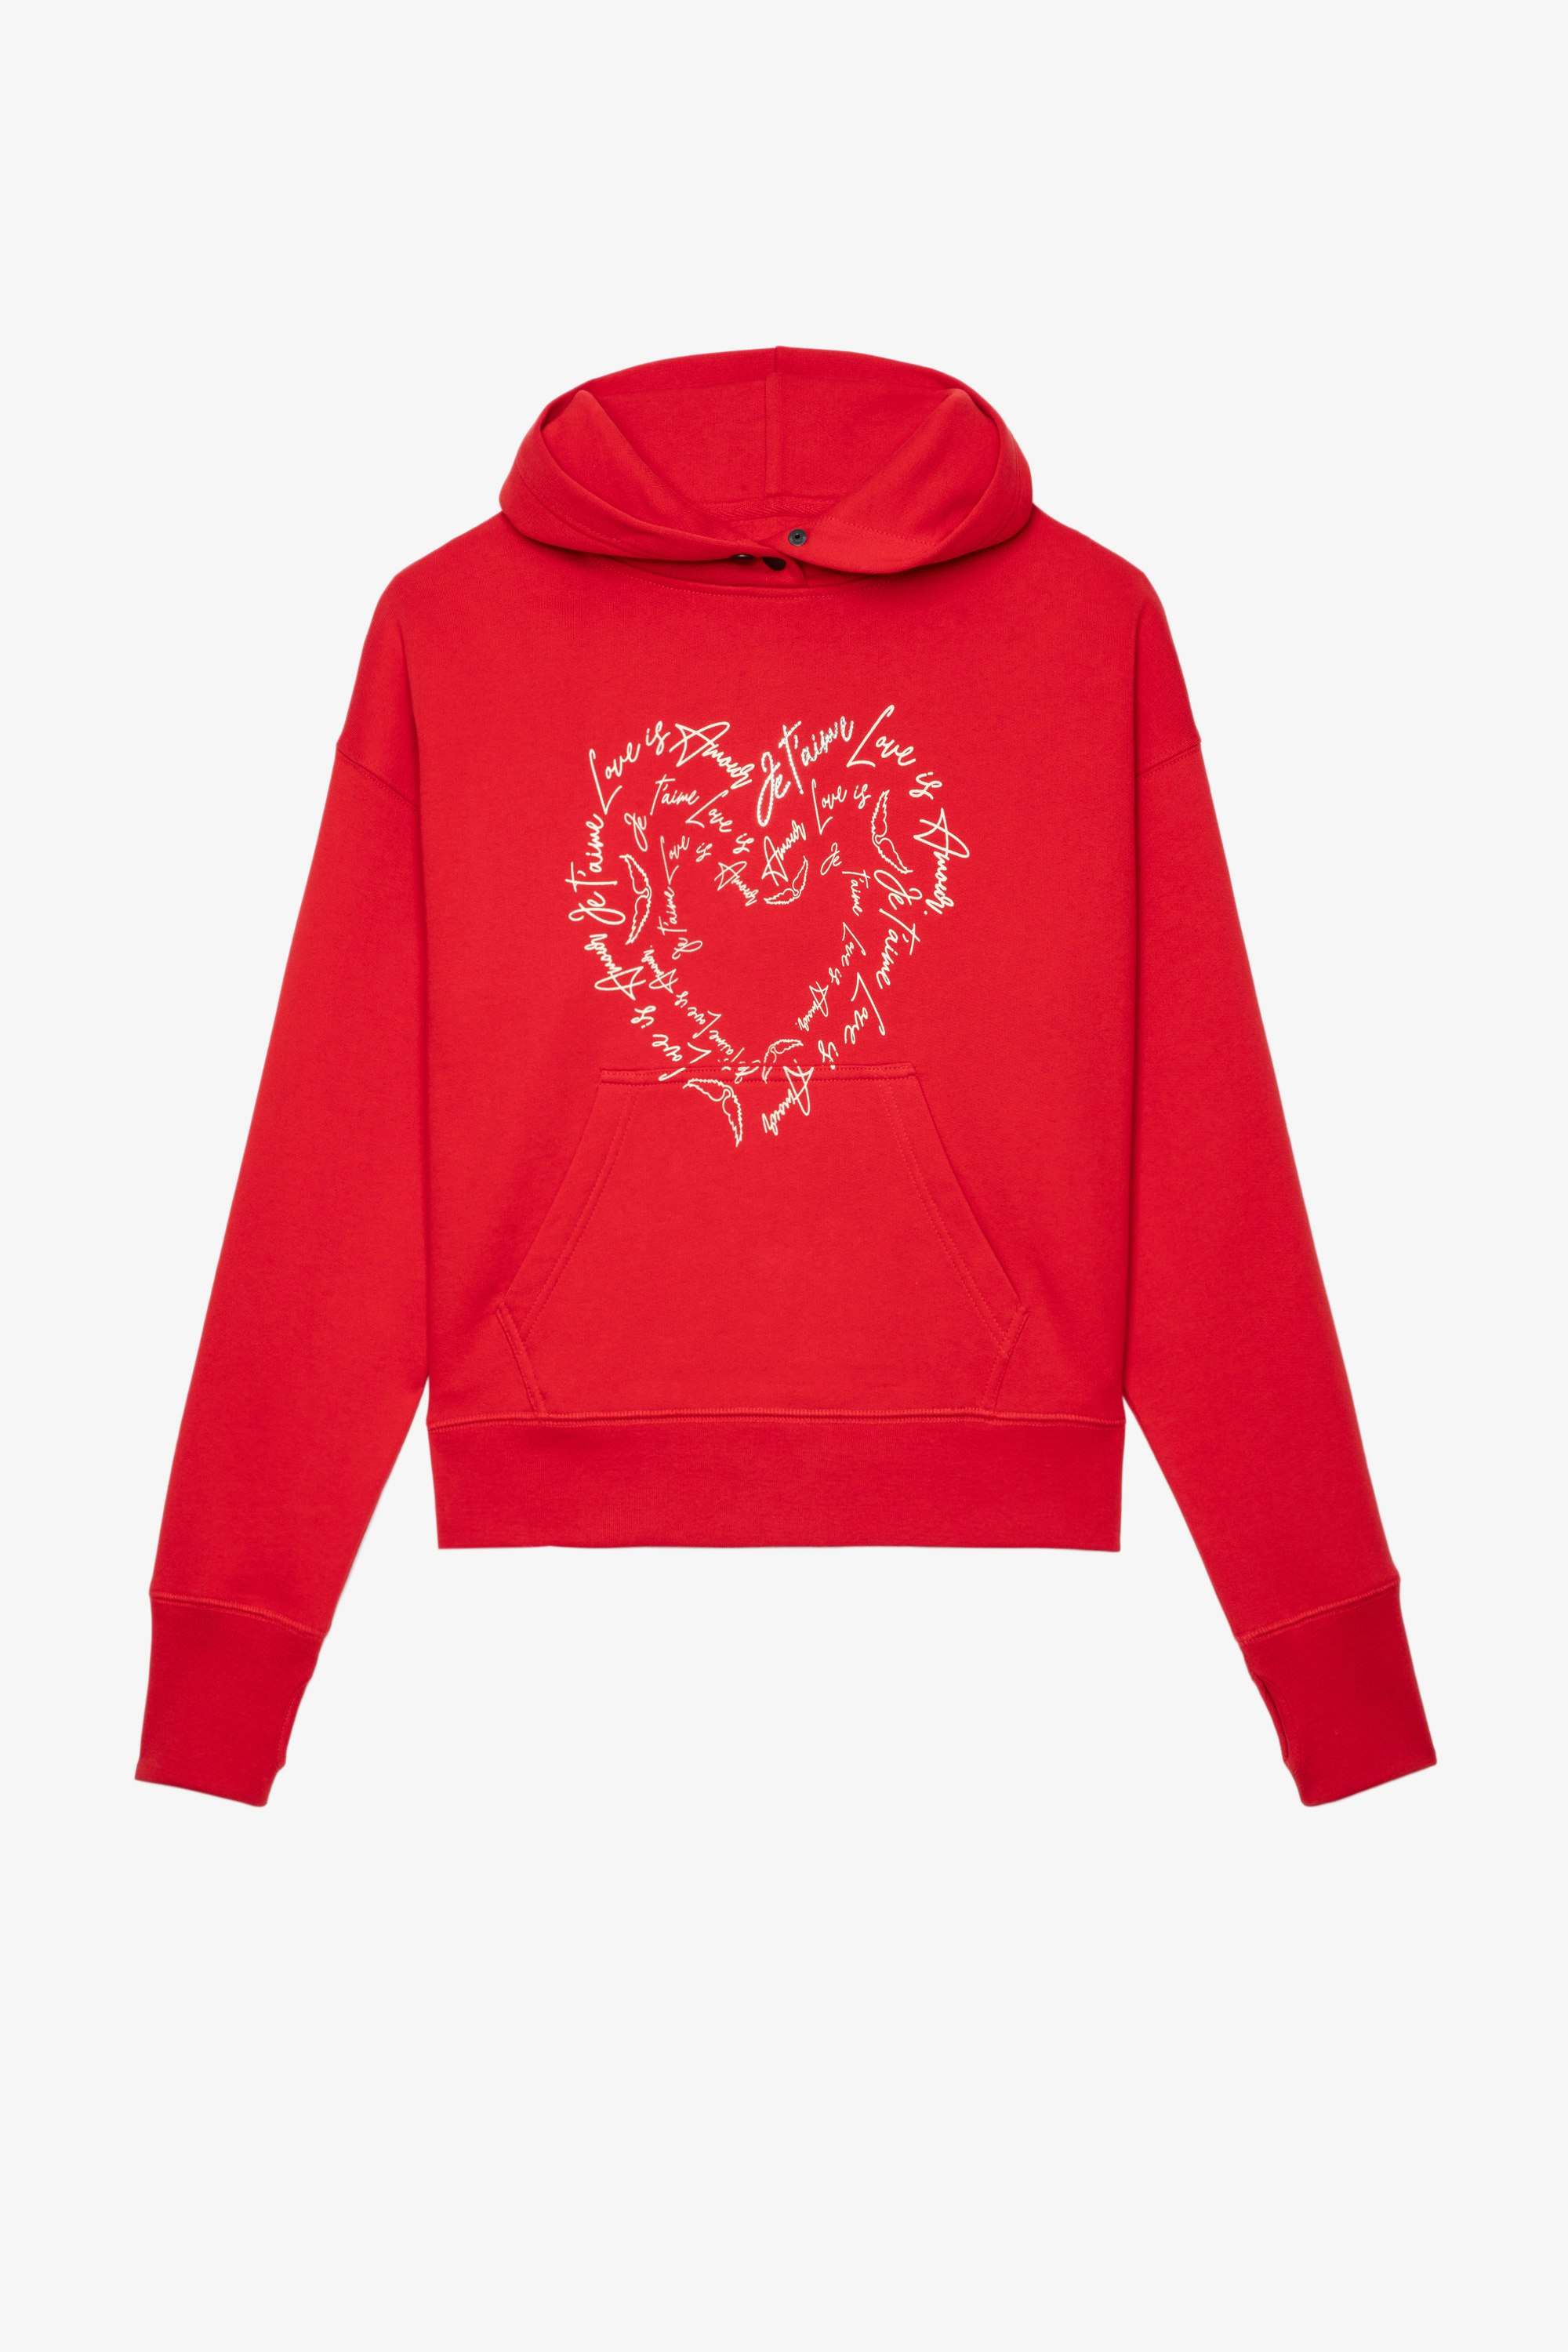 Sweatshirt Mia Damen-Kapuzenshirt aus roter Baumwolle mit Liebesbotschaften in Herzform